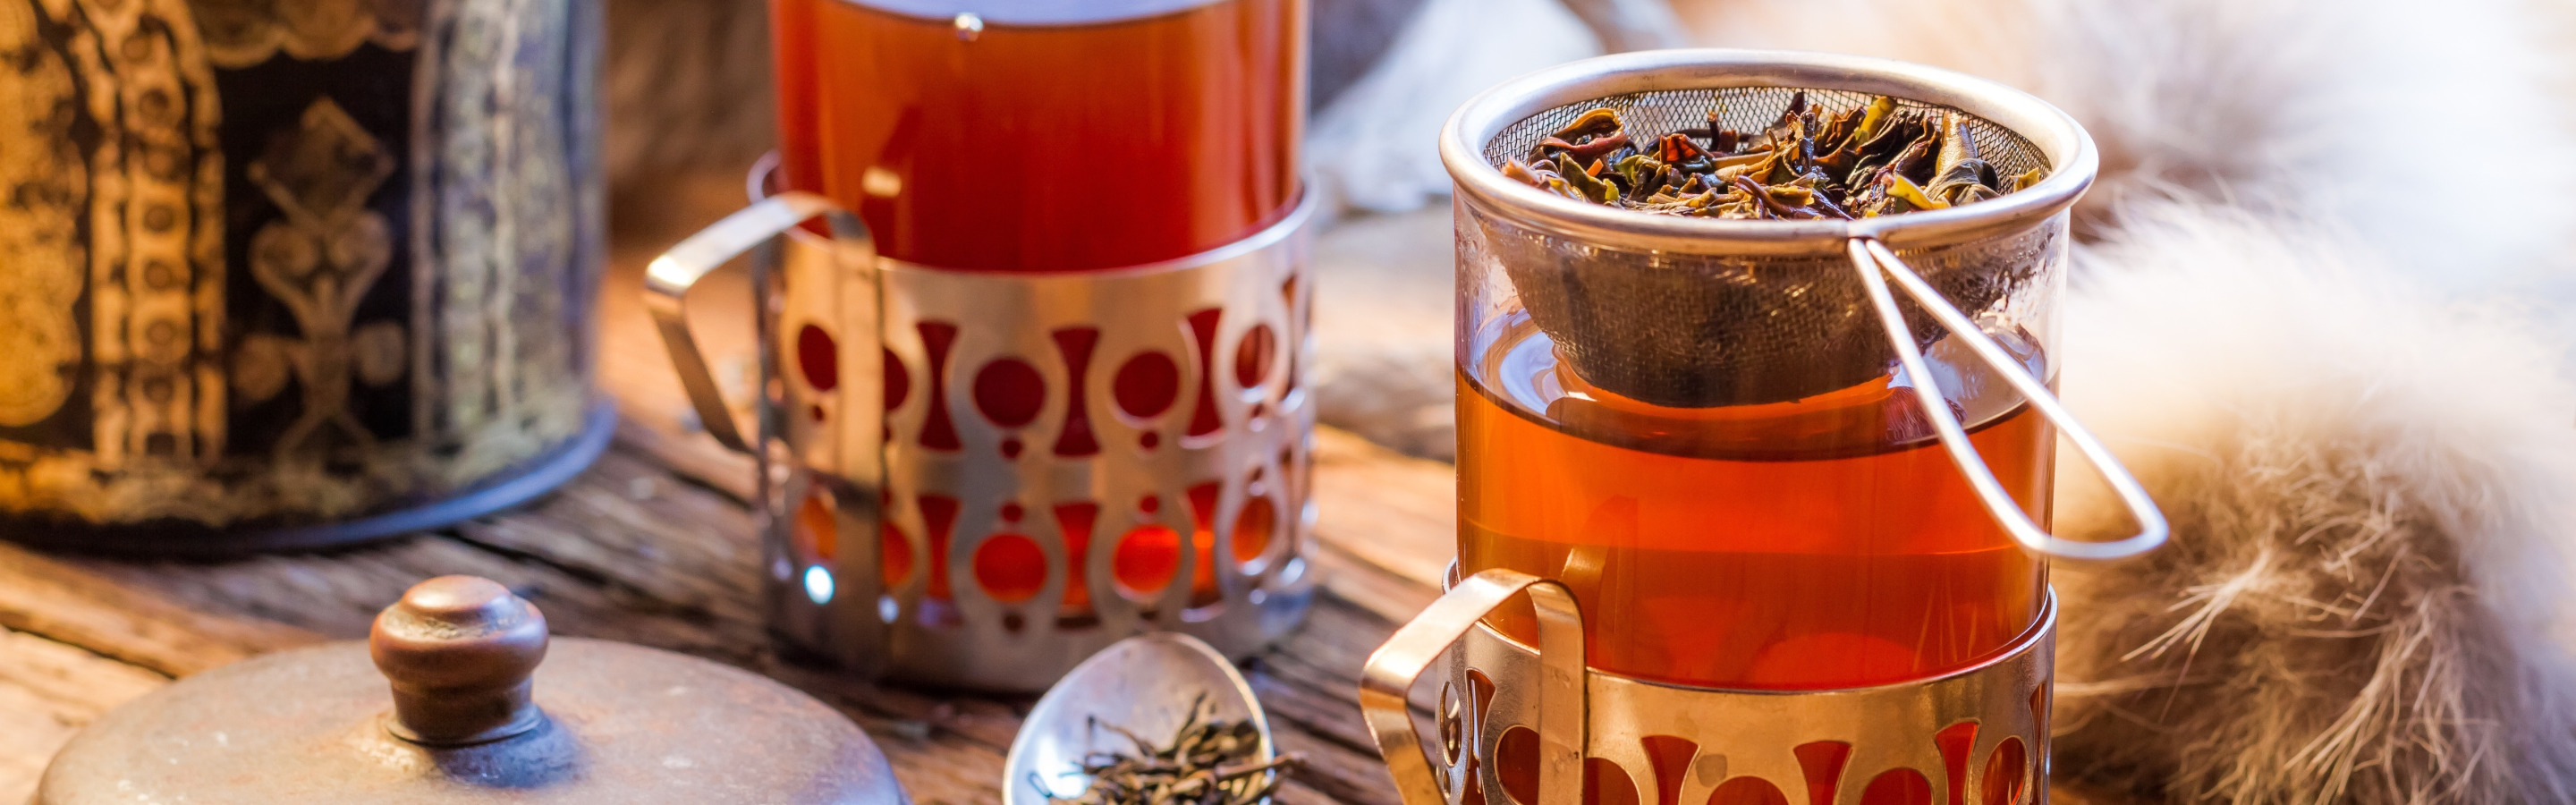 При температуре пьют горячий чай. Чай. Горячий напиток. Чай в подстаканнике. Чаепитие в саду.